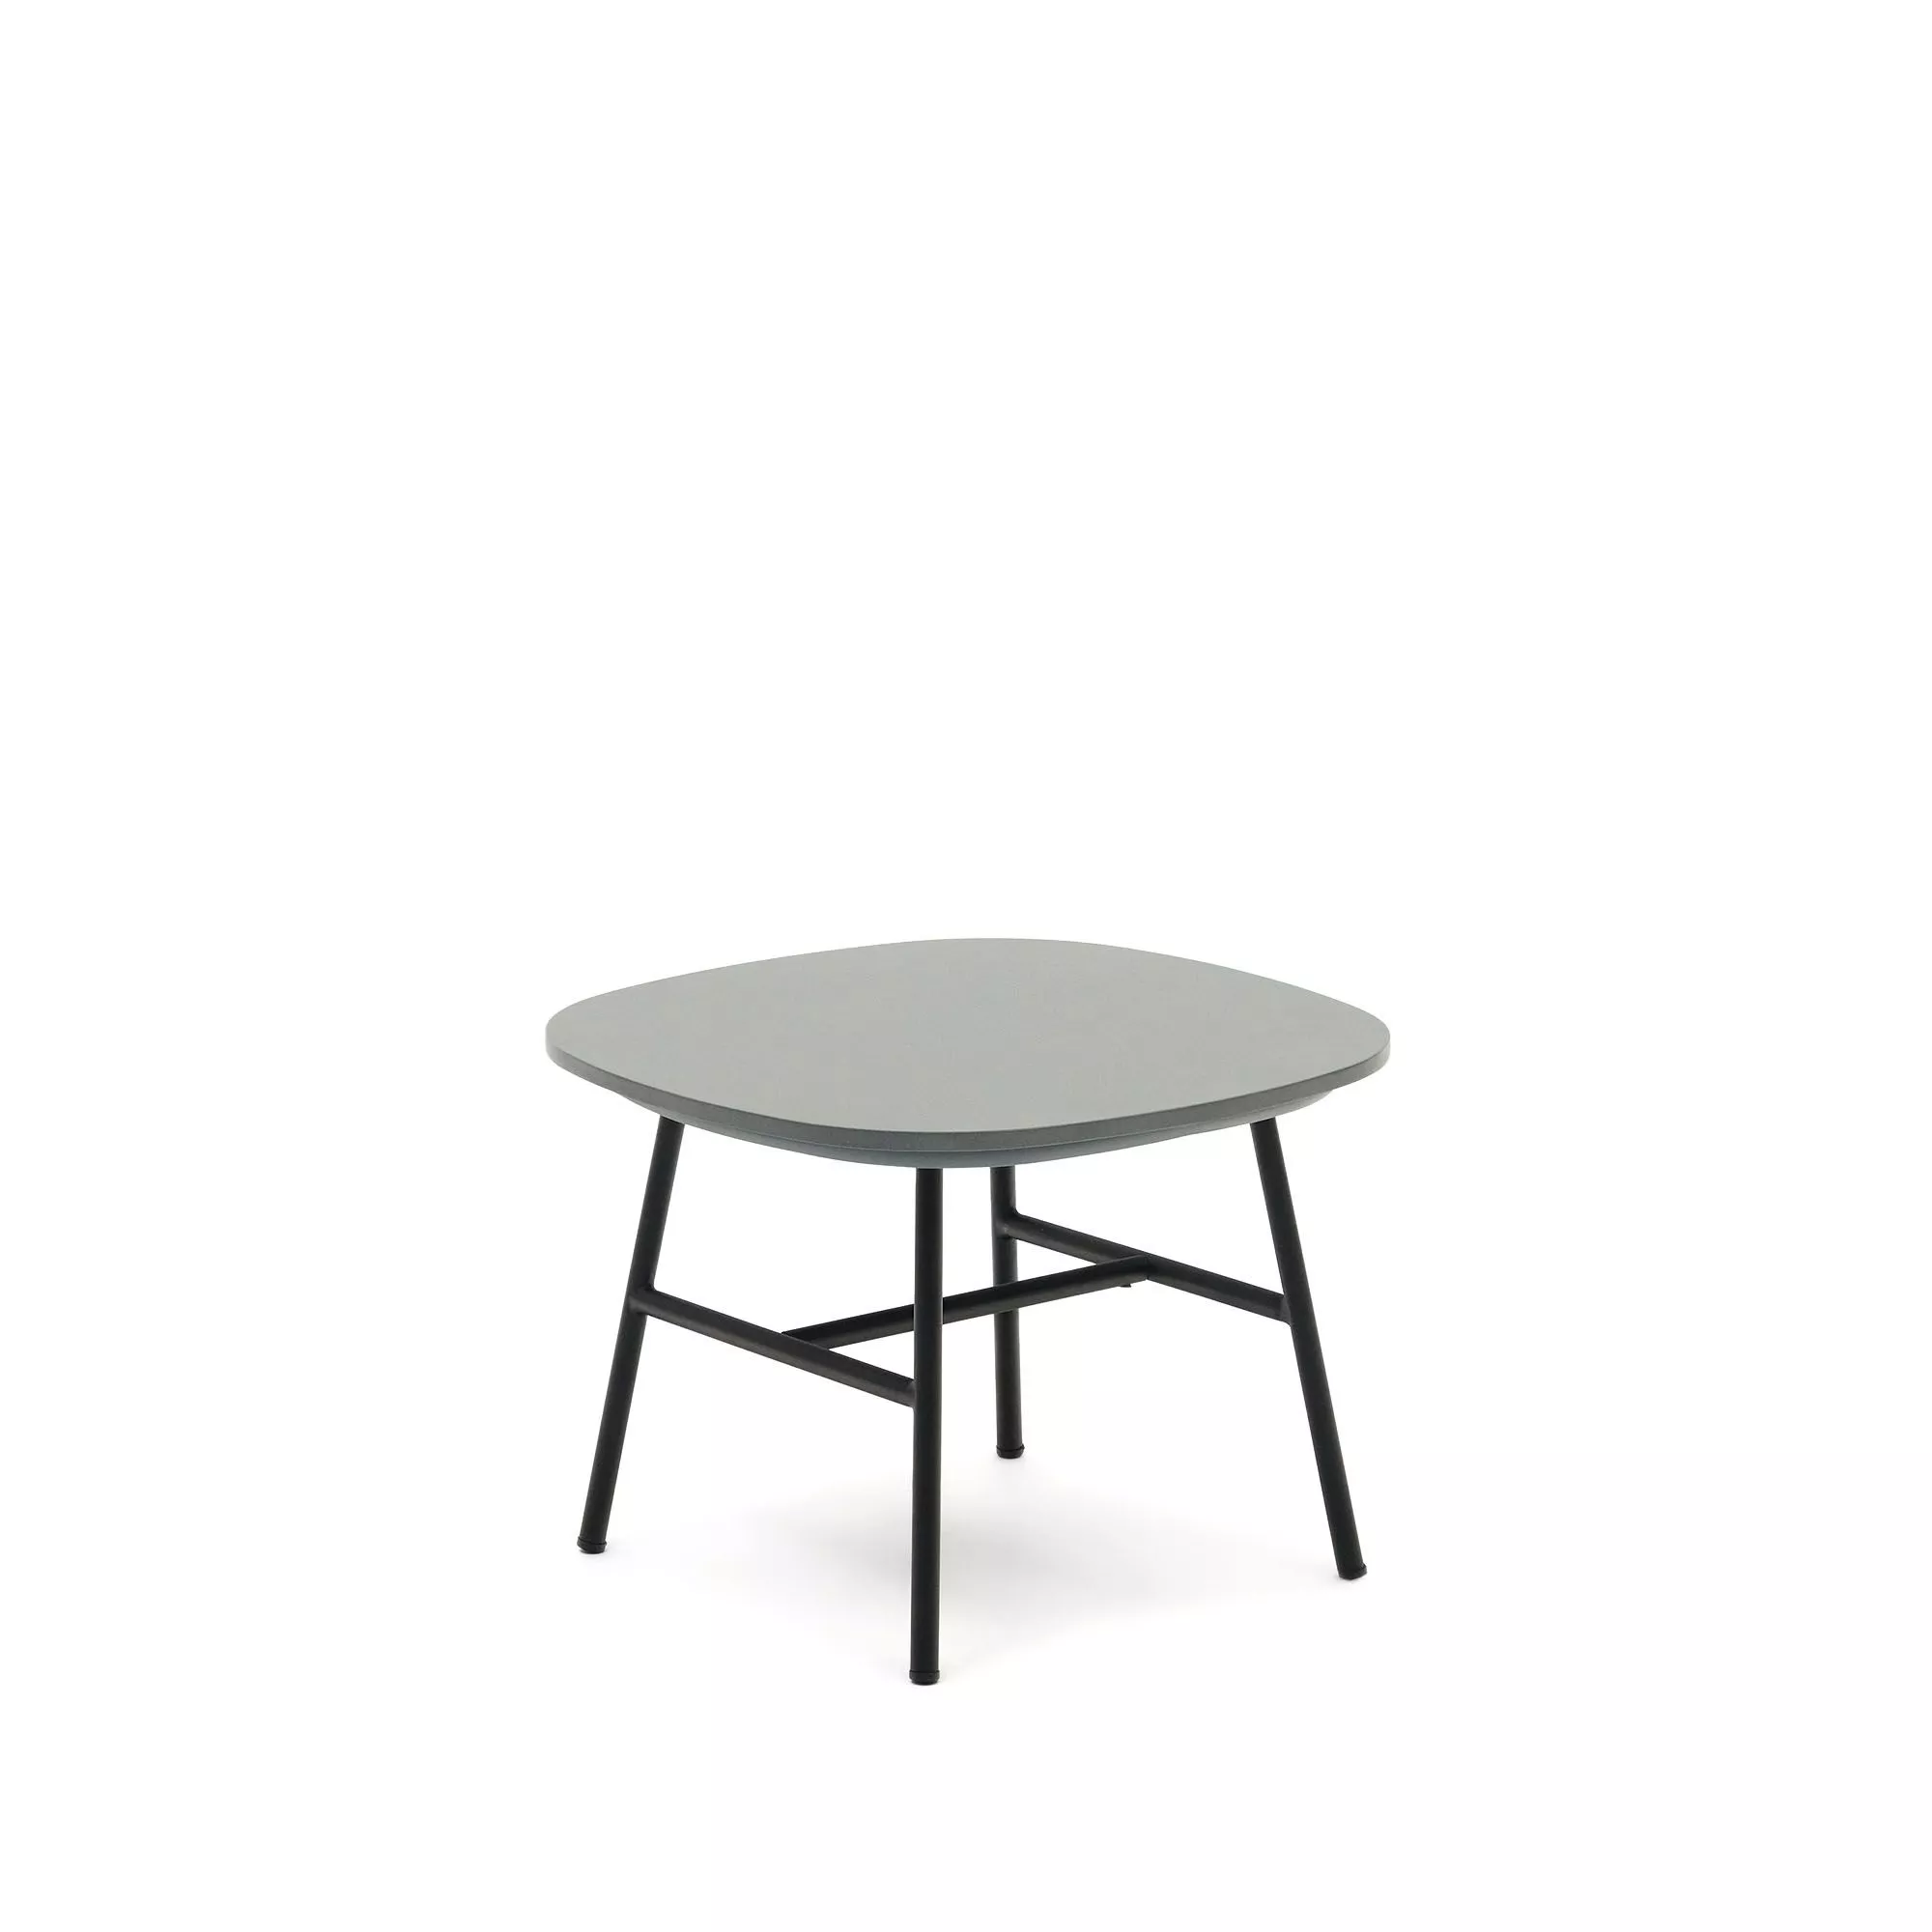 Приставной столик La Forma Bramant из стали с черной отделкой 60 x 60 см